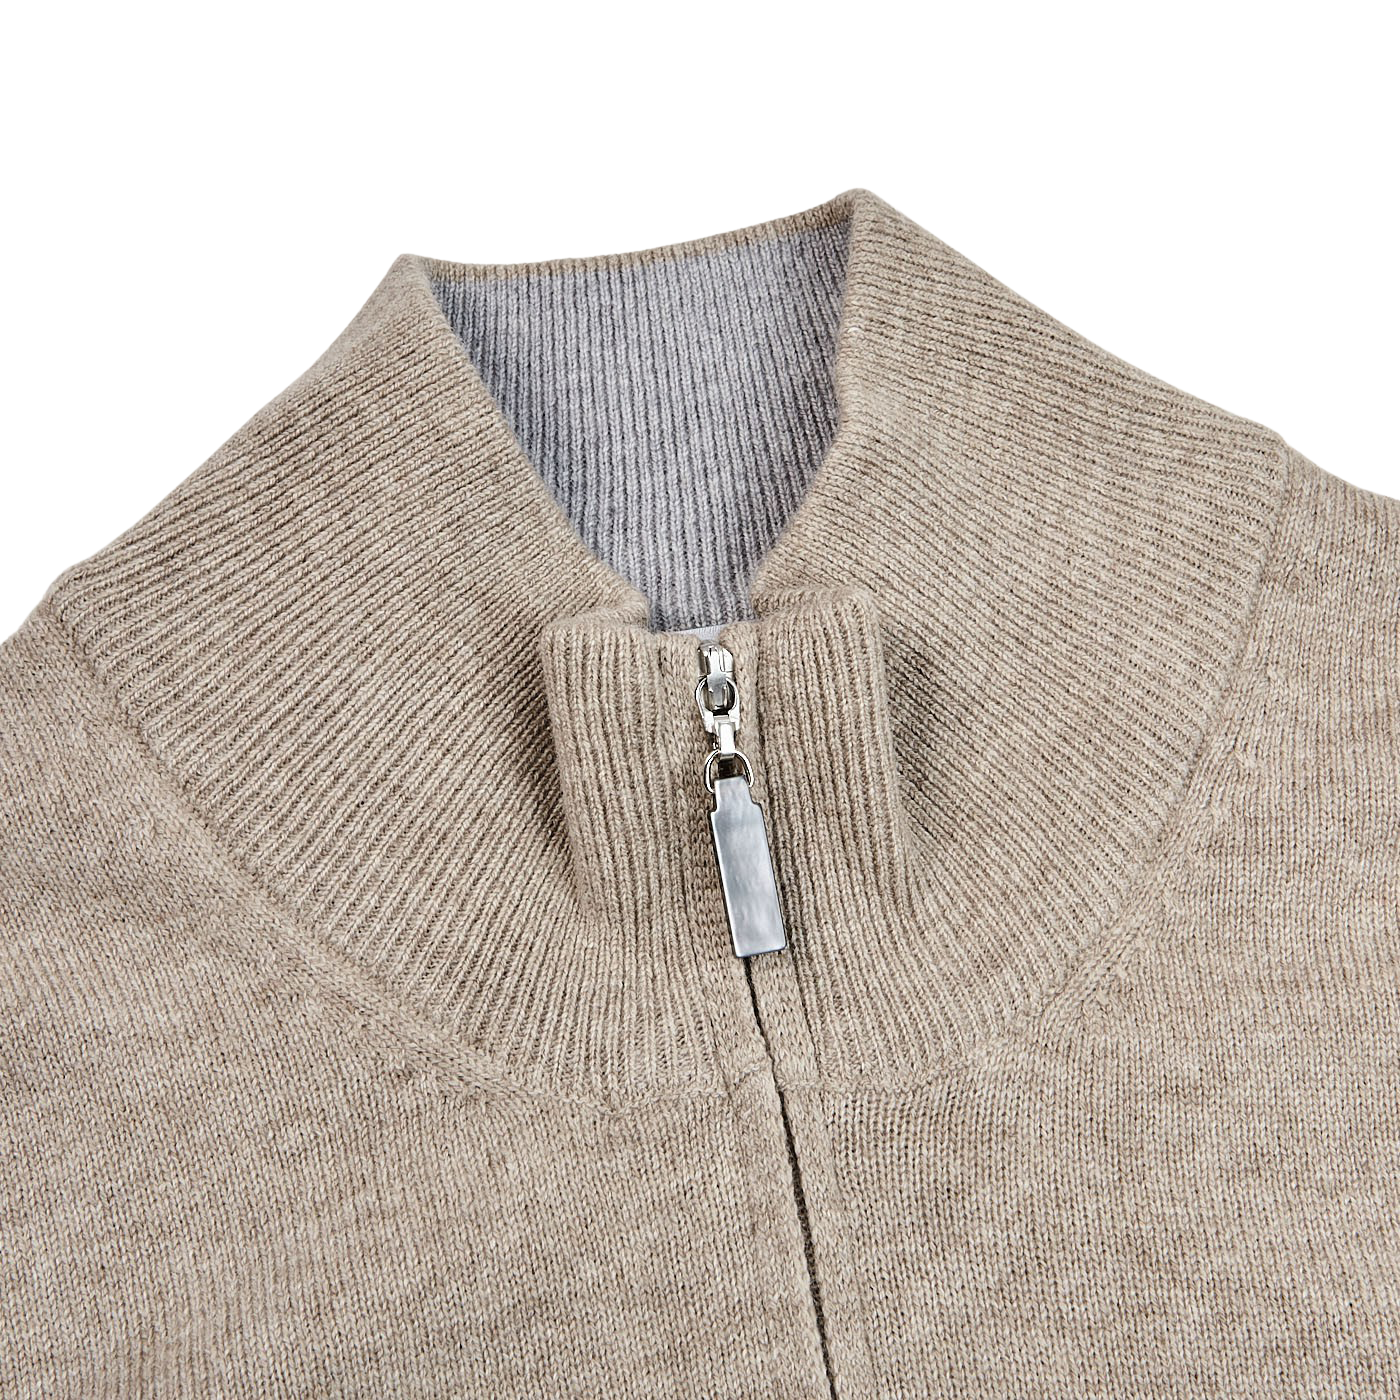 Gran Sasso Beige Wool Cashmere 1:4 Zip Sweater Collar